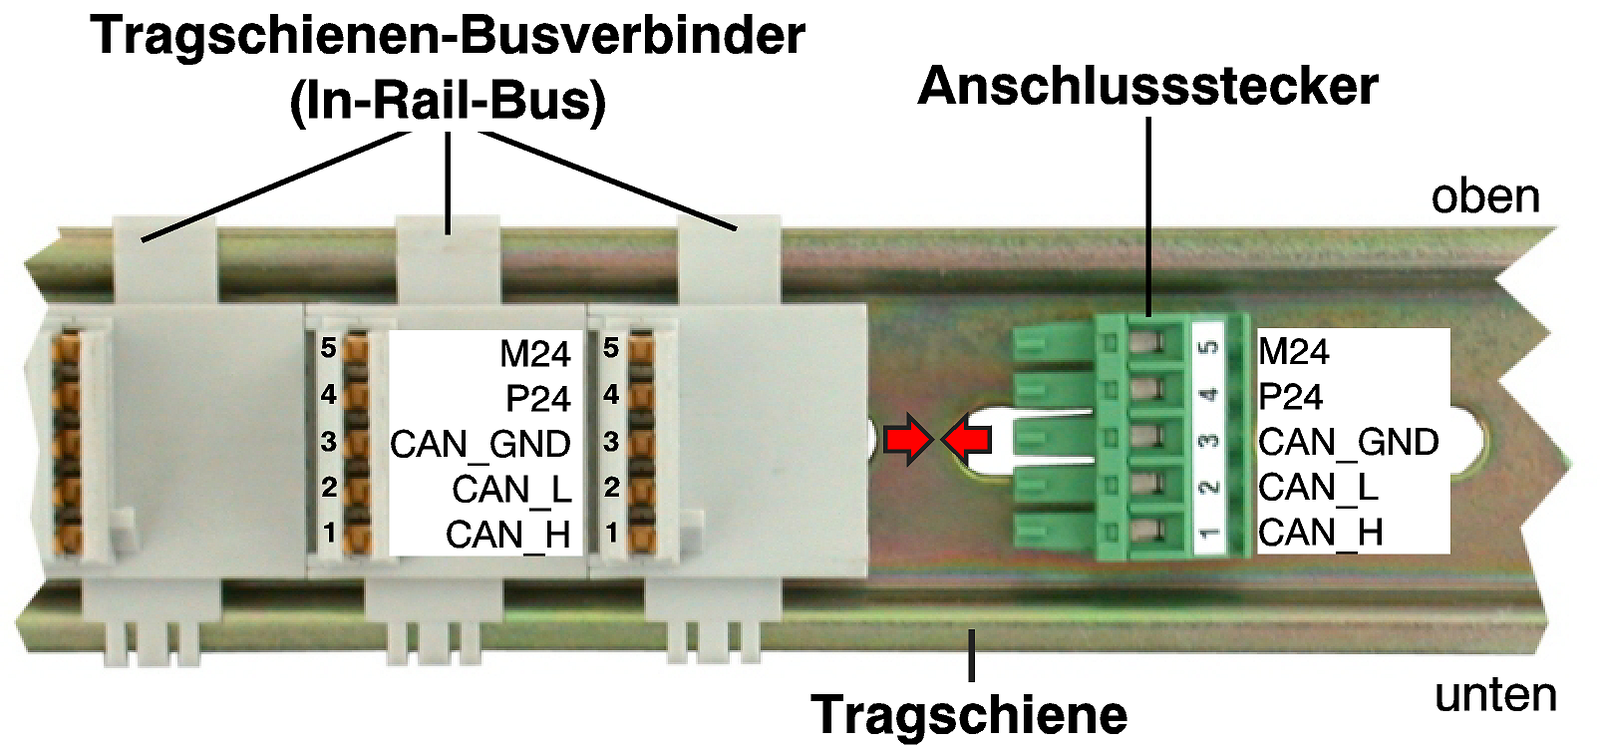 Image: Tragschiene mit InRailBus-Verbindern und Anschlussstecker